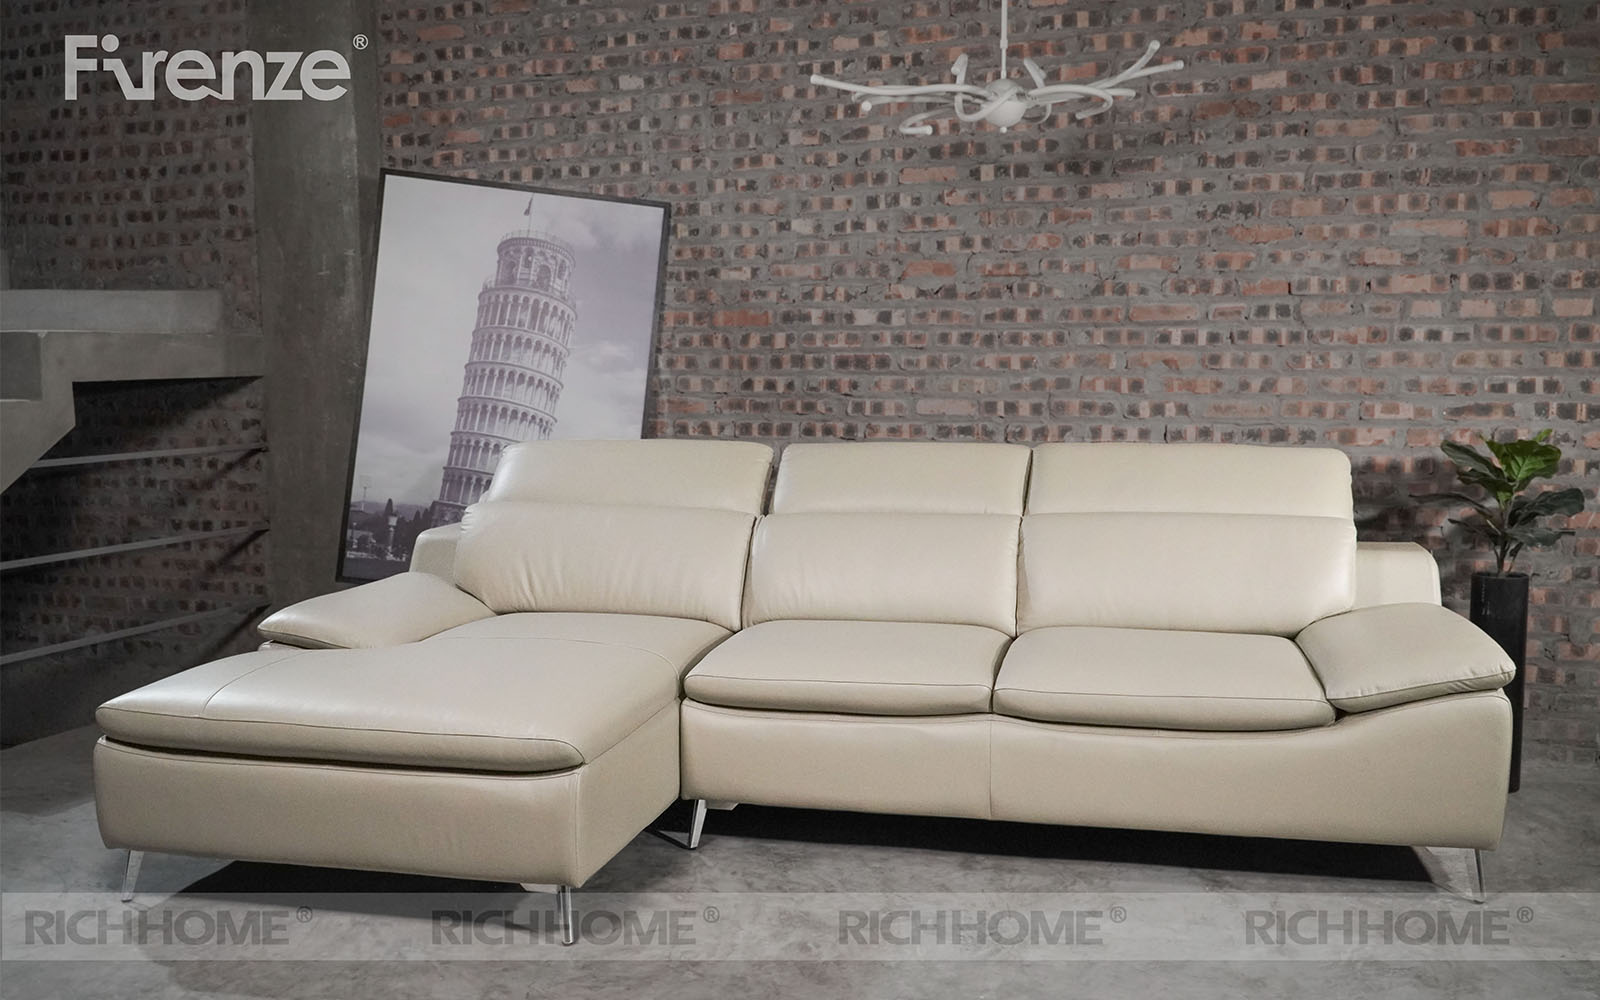 Tổng hợp các mẫu sofa cho căn hộ nhỏ diện tích 25m2 - Ảnh 10